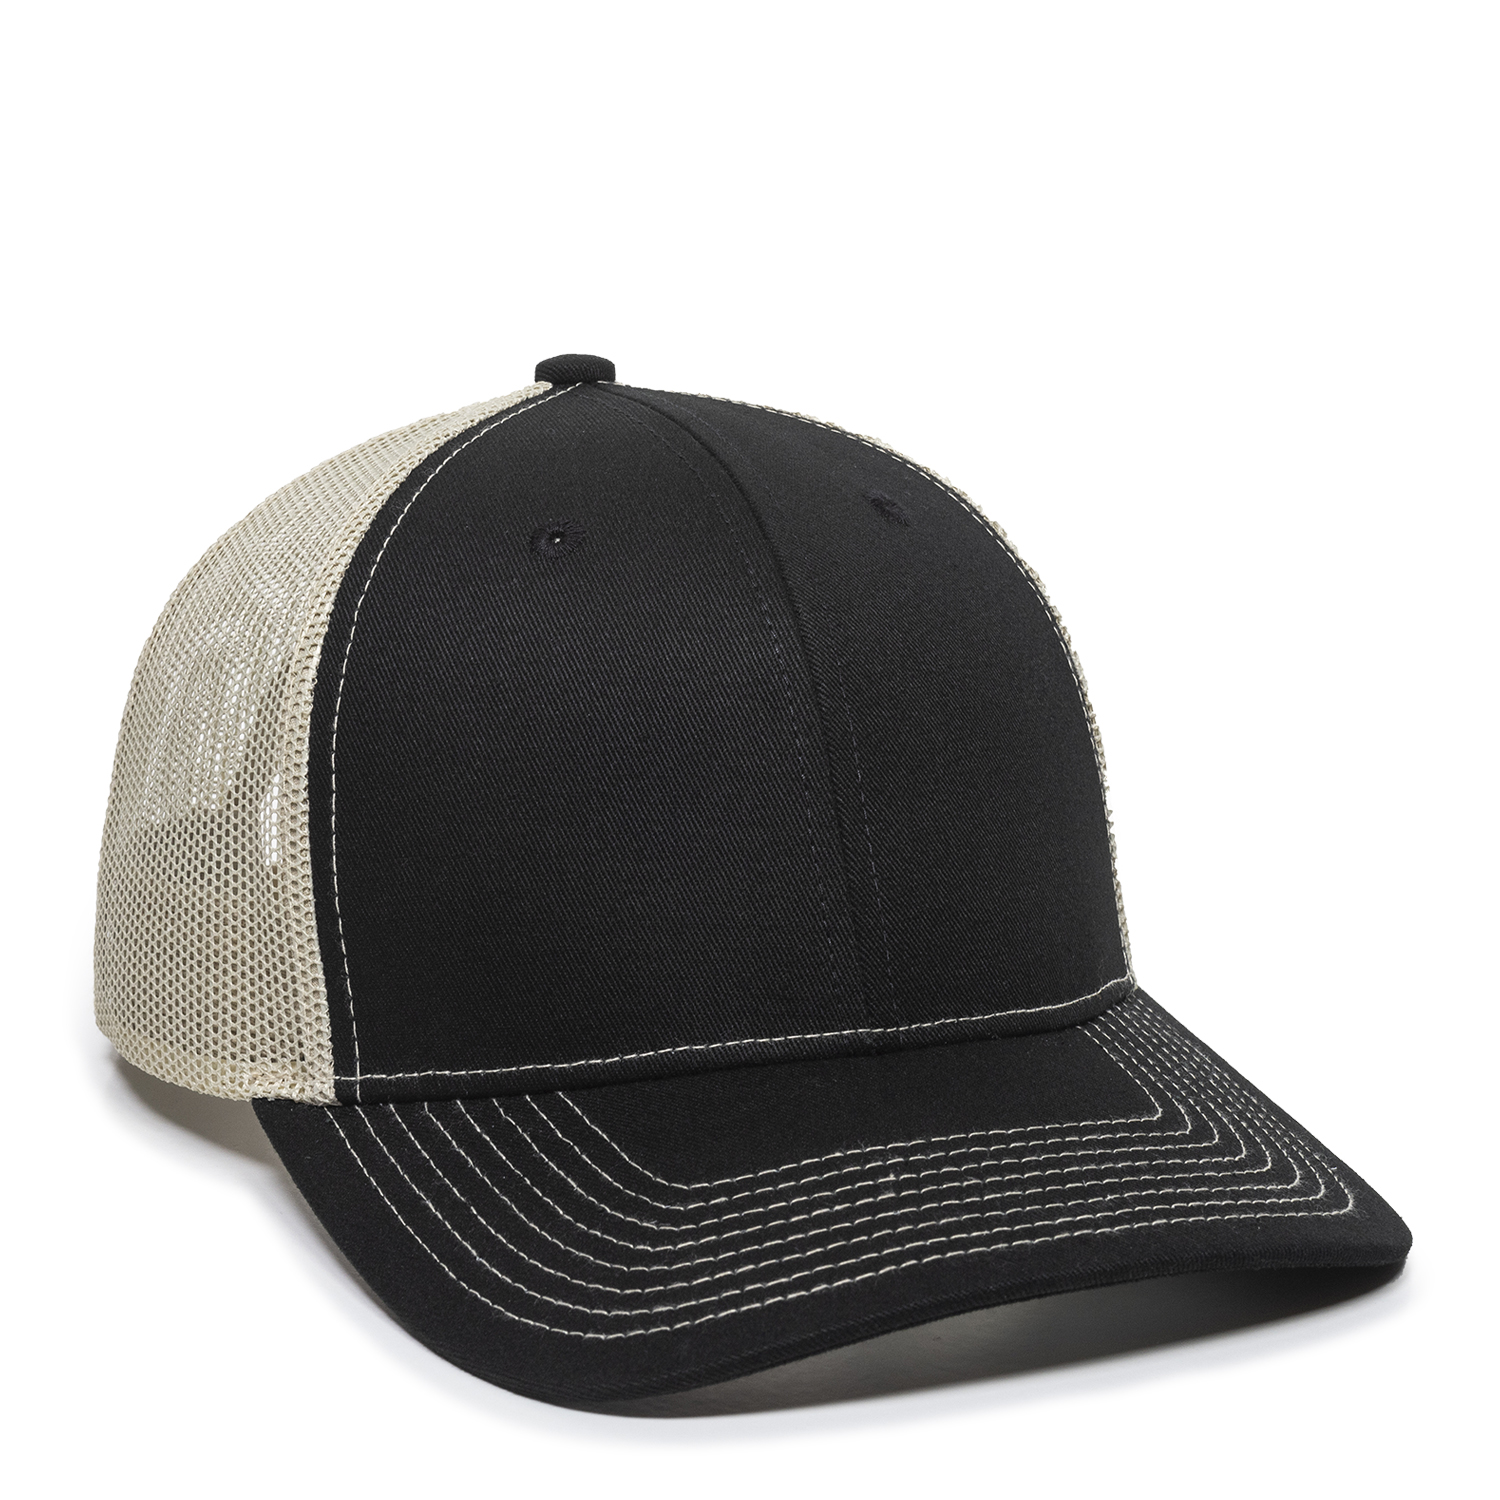 Straw Bamboo Look Faux Fur Mesh Plain Trucker Baseball Snapback Hat Cap 